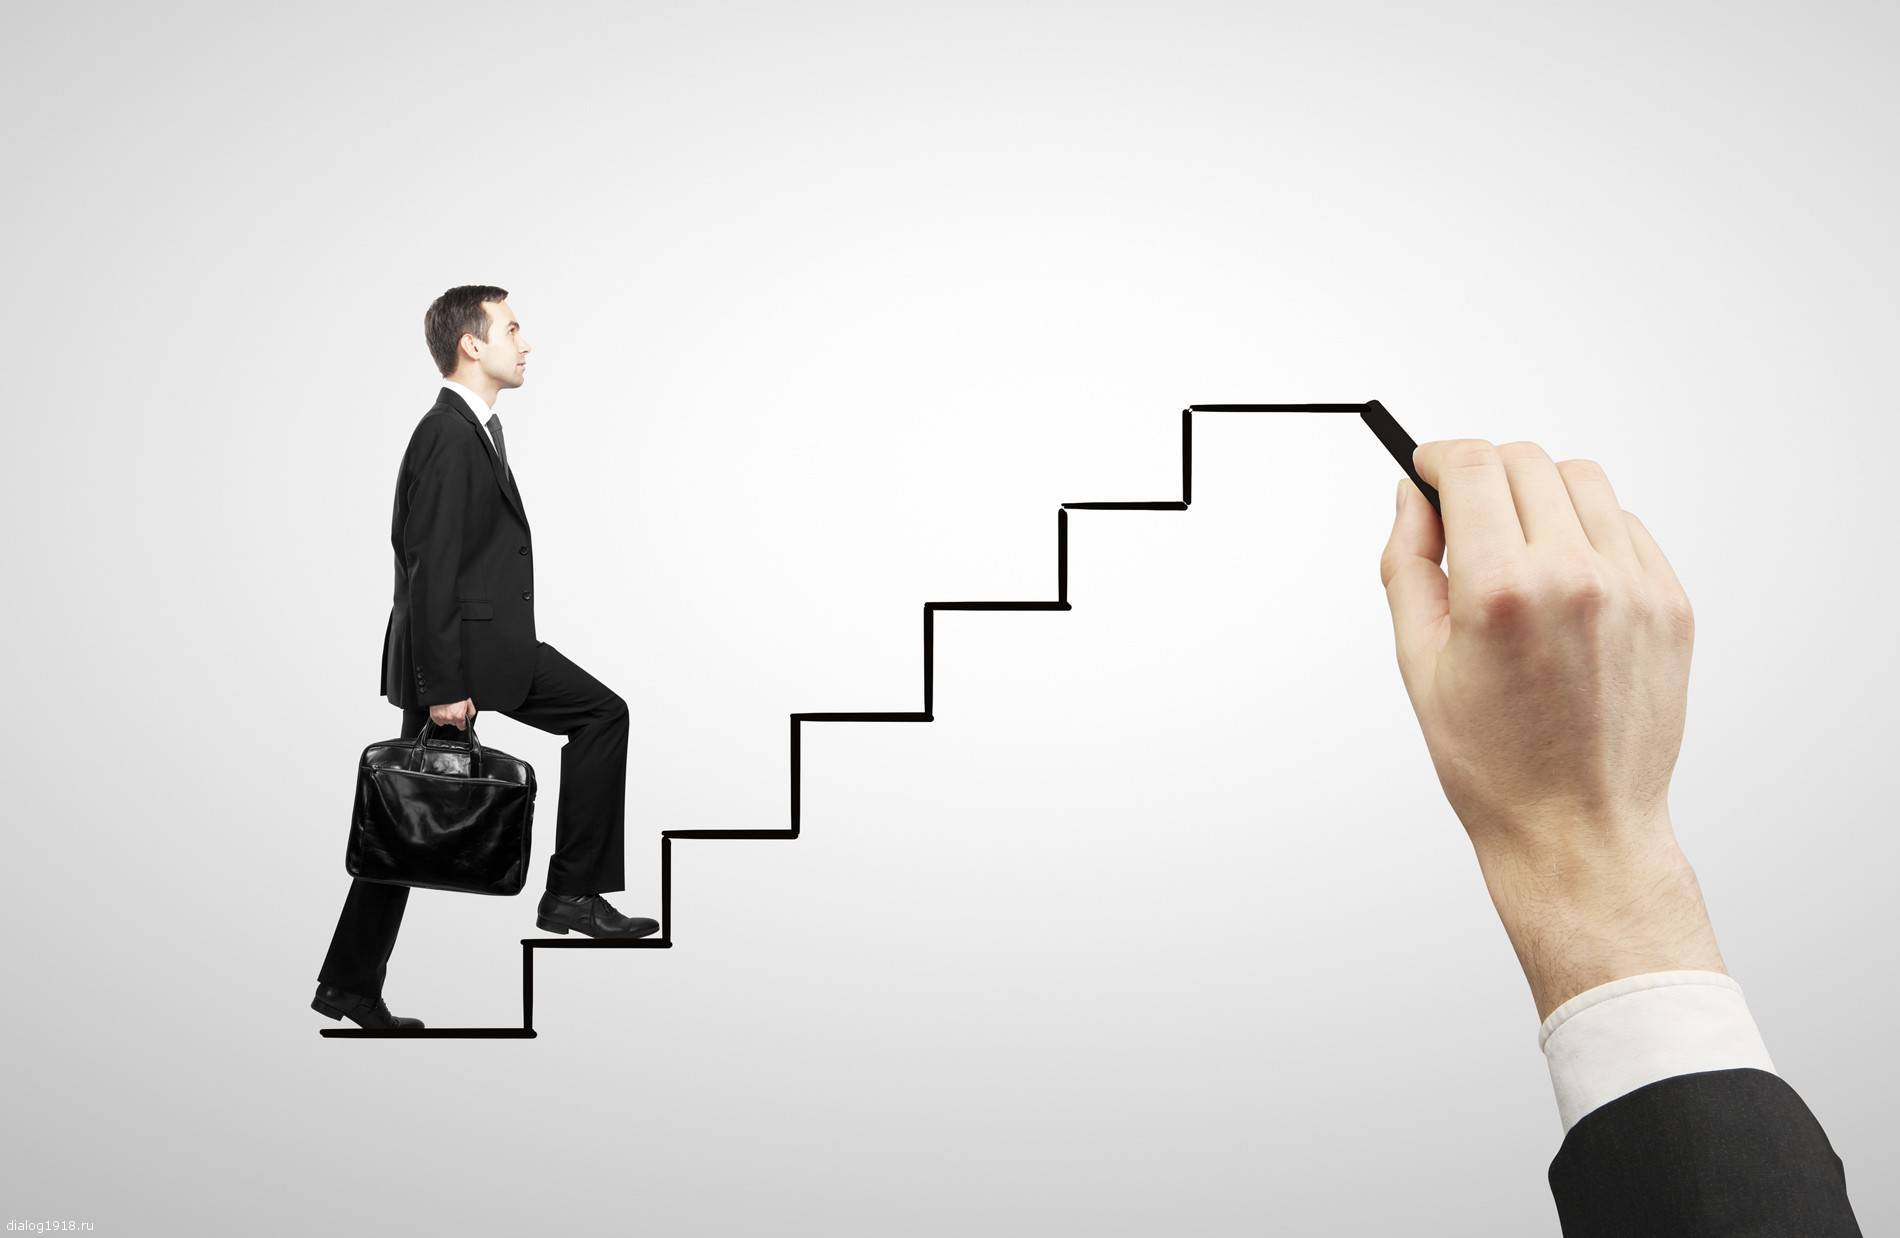 Карьерная лестница — продвижение и повышение вверх не спотыкаясь